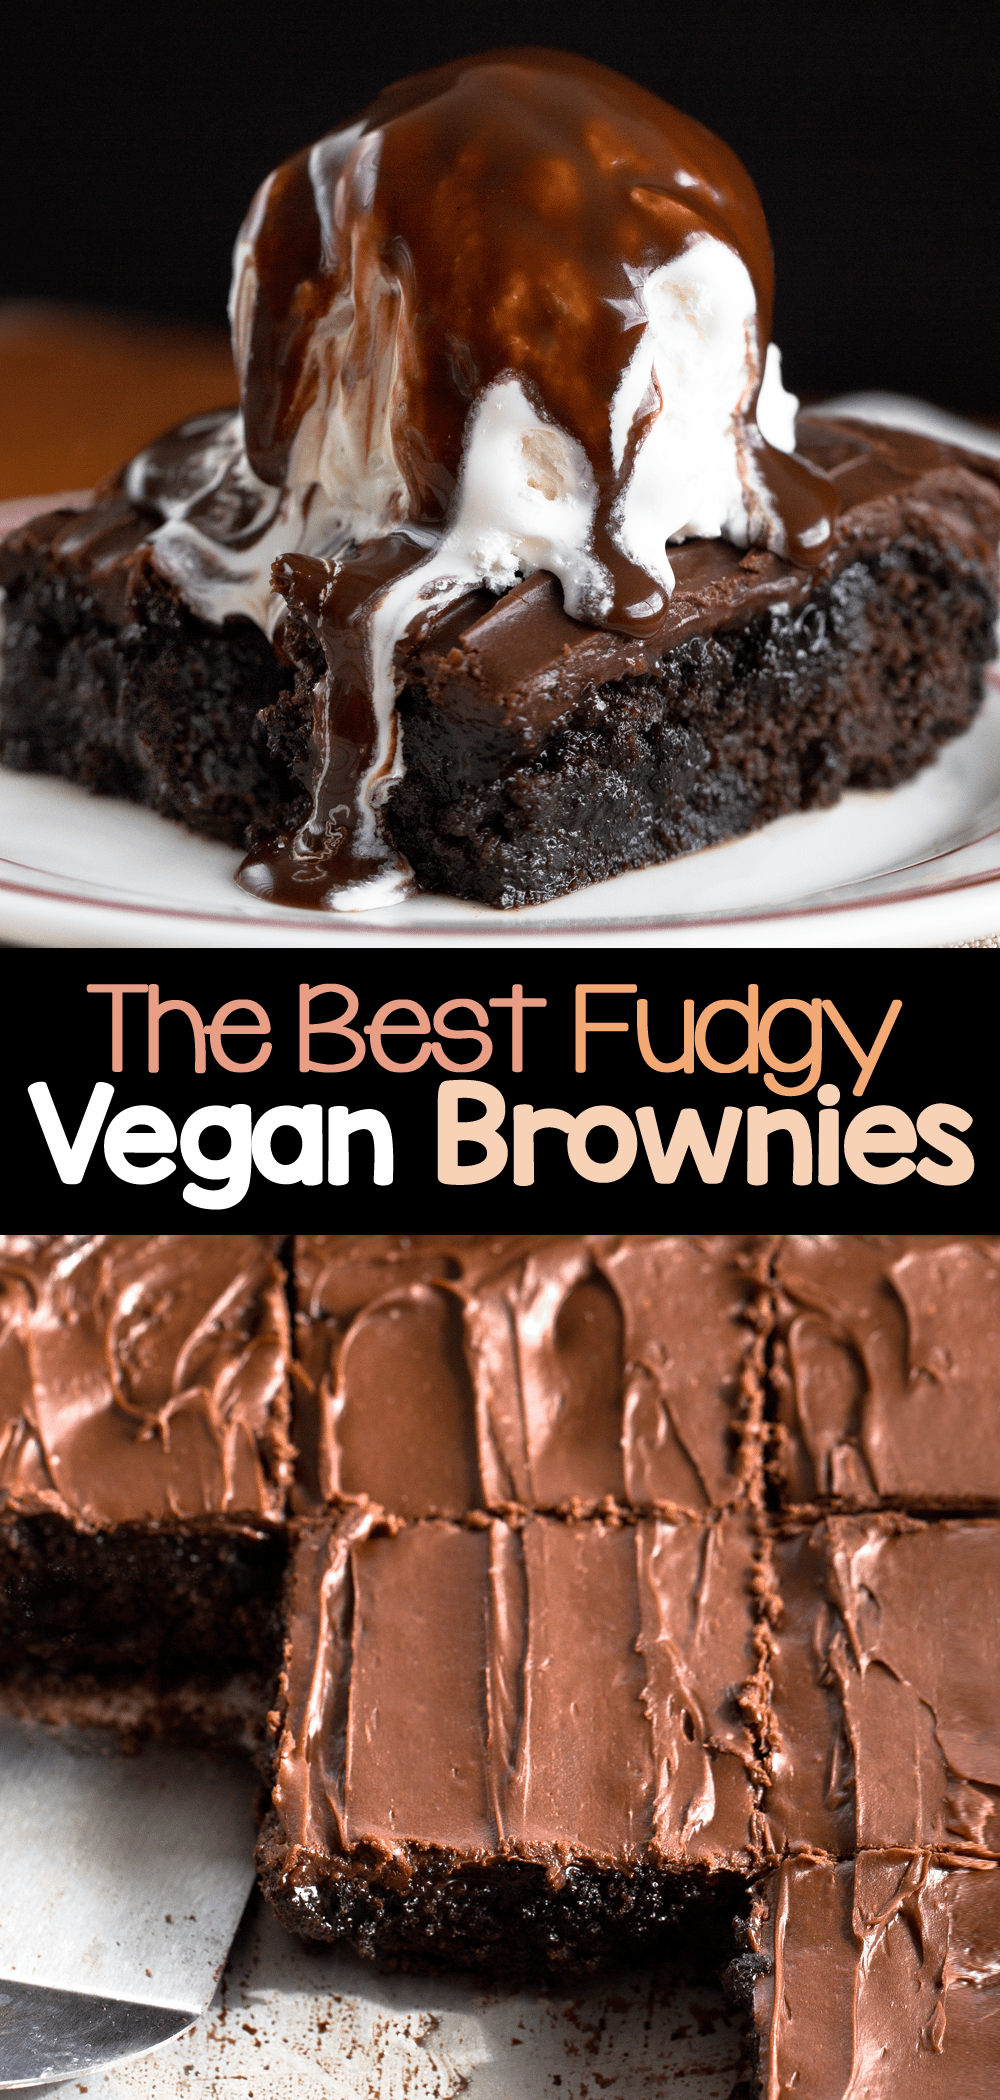 The Best Vegan Brownies Dark Chocolate Fudge Brownies - Vegan Brownies - The Original Best Recipe!